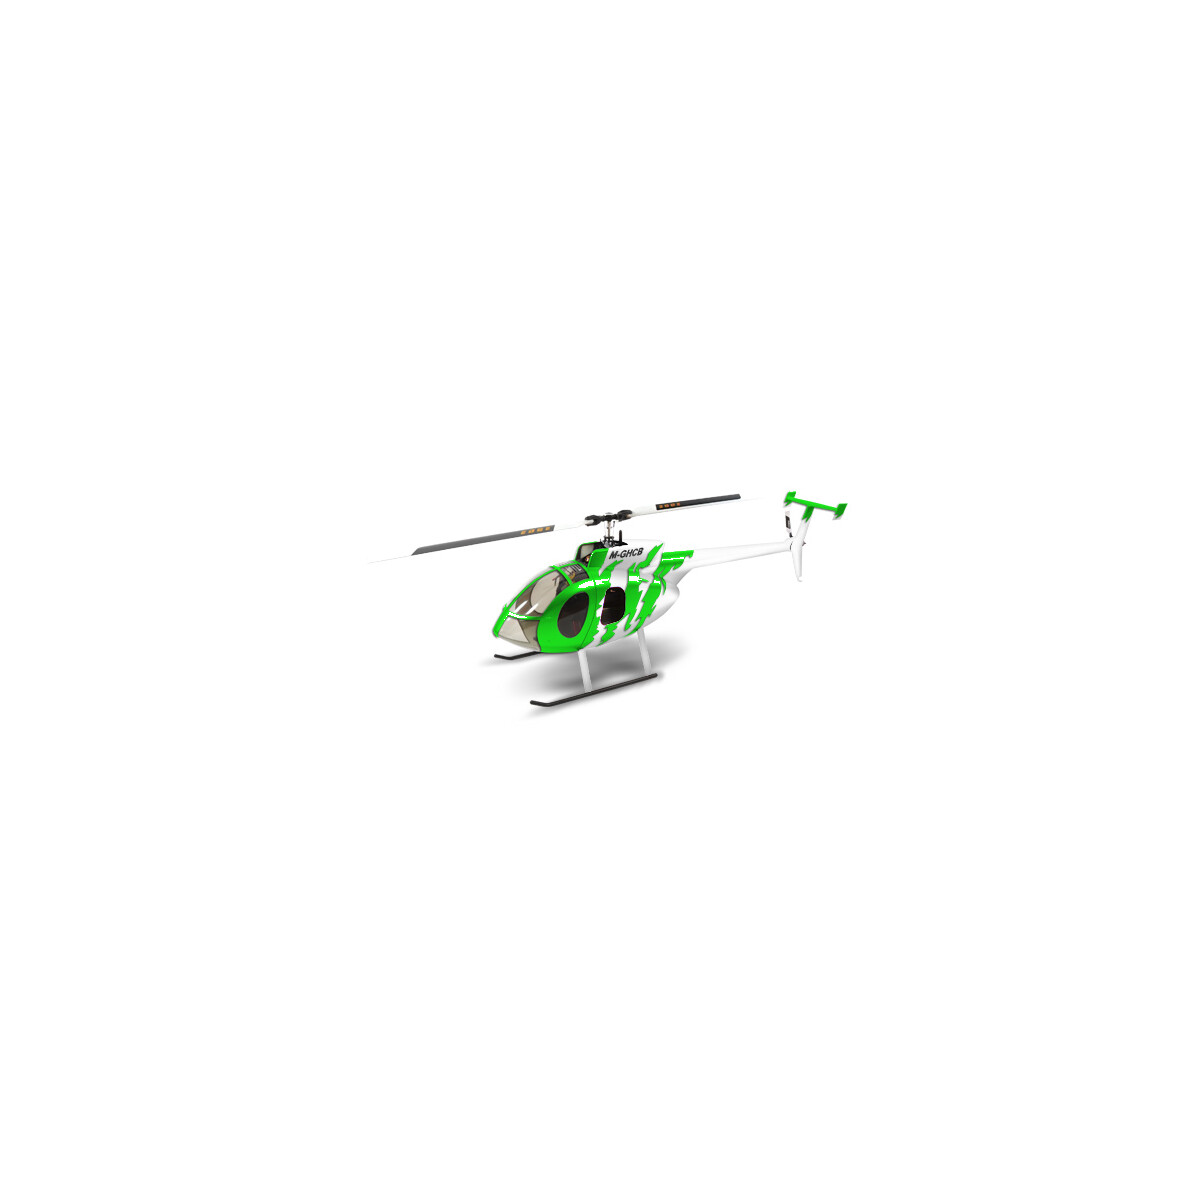 Hughes 500 Scale-Rumpf, grün/weiß für...